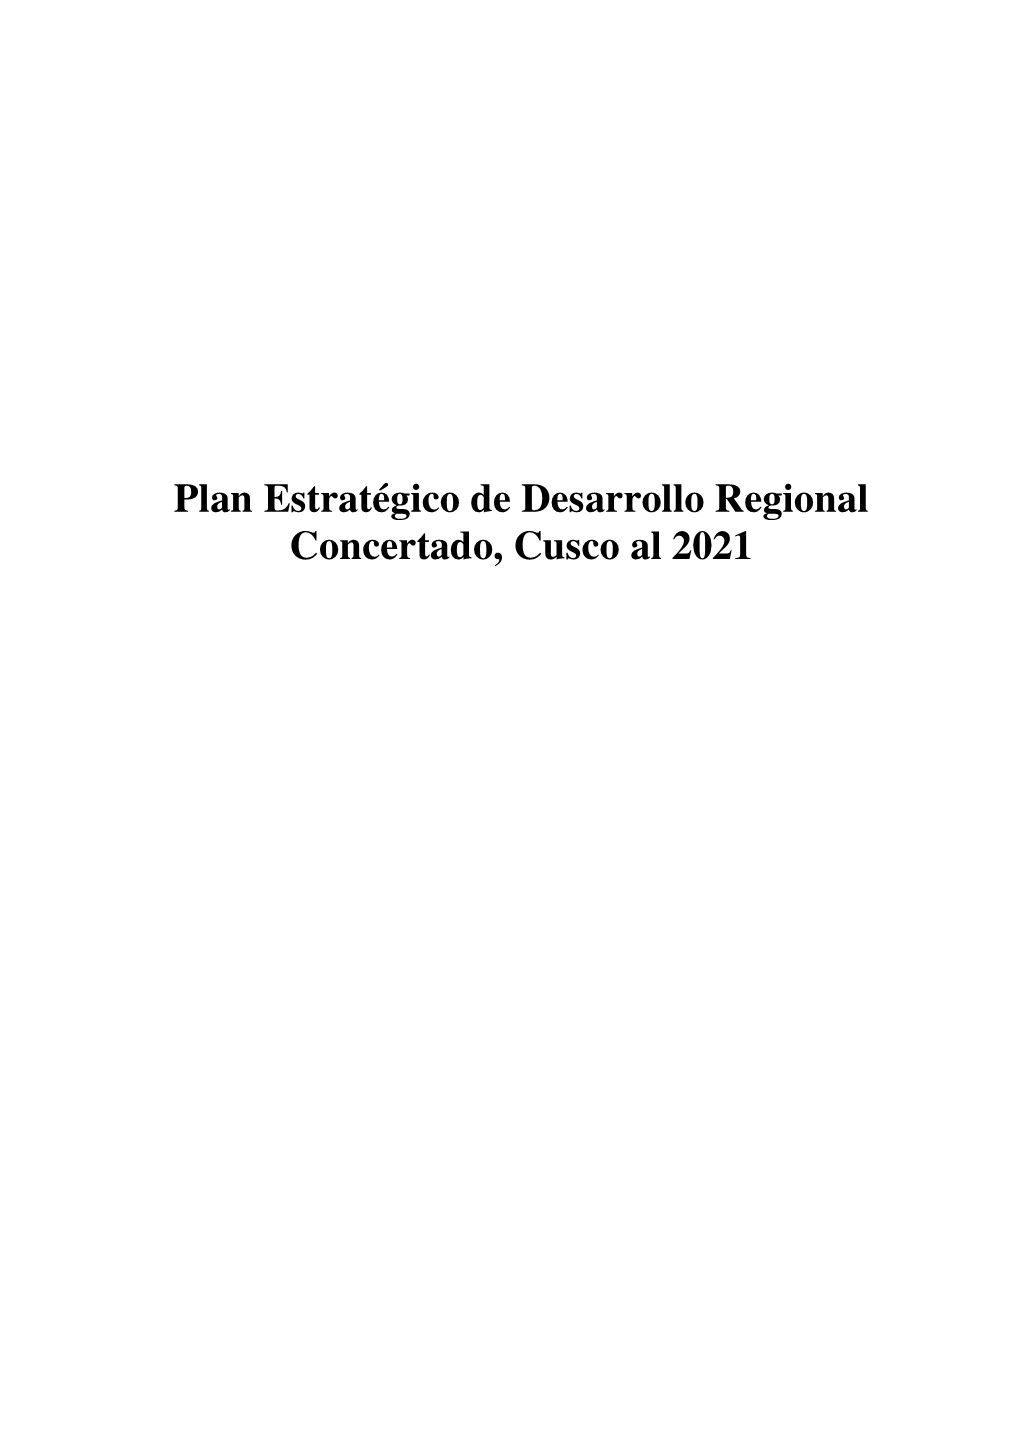 Plan Estratégico De Desarrollo Regional Concertado, Cusco Al 2021